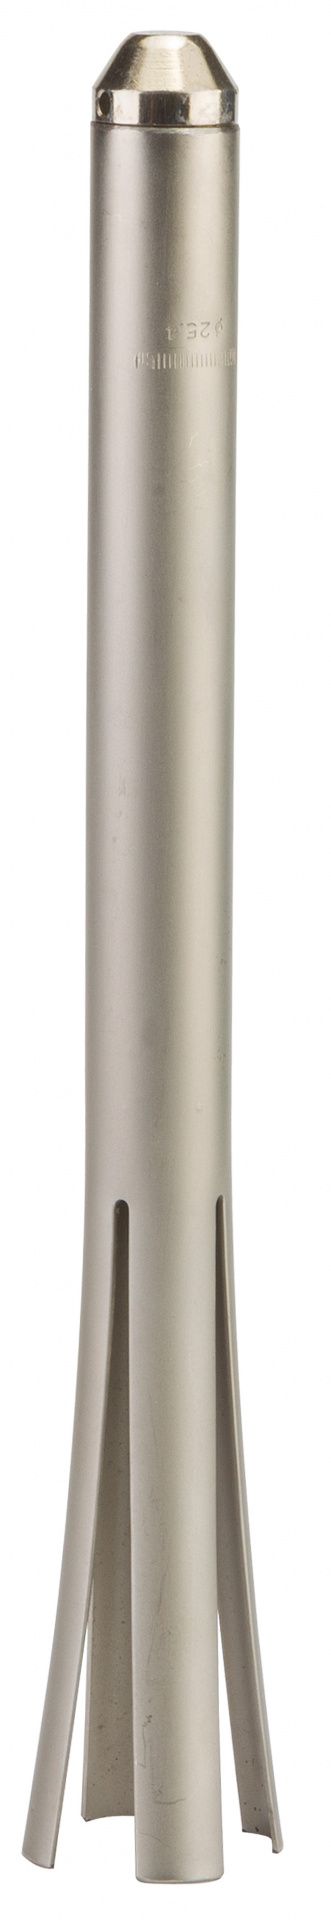 Выжимка YC-1858S Bike Hand для чашек рулевой колонки диам. 25,4 мм